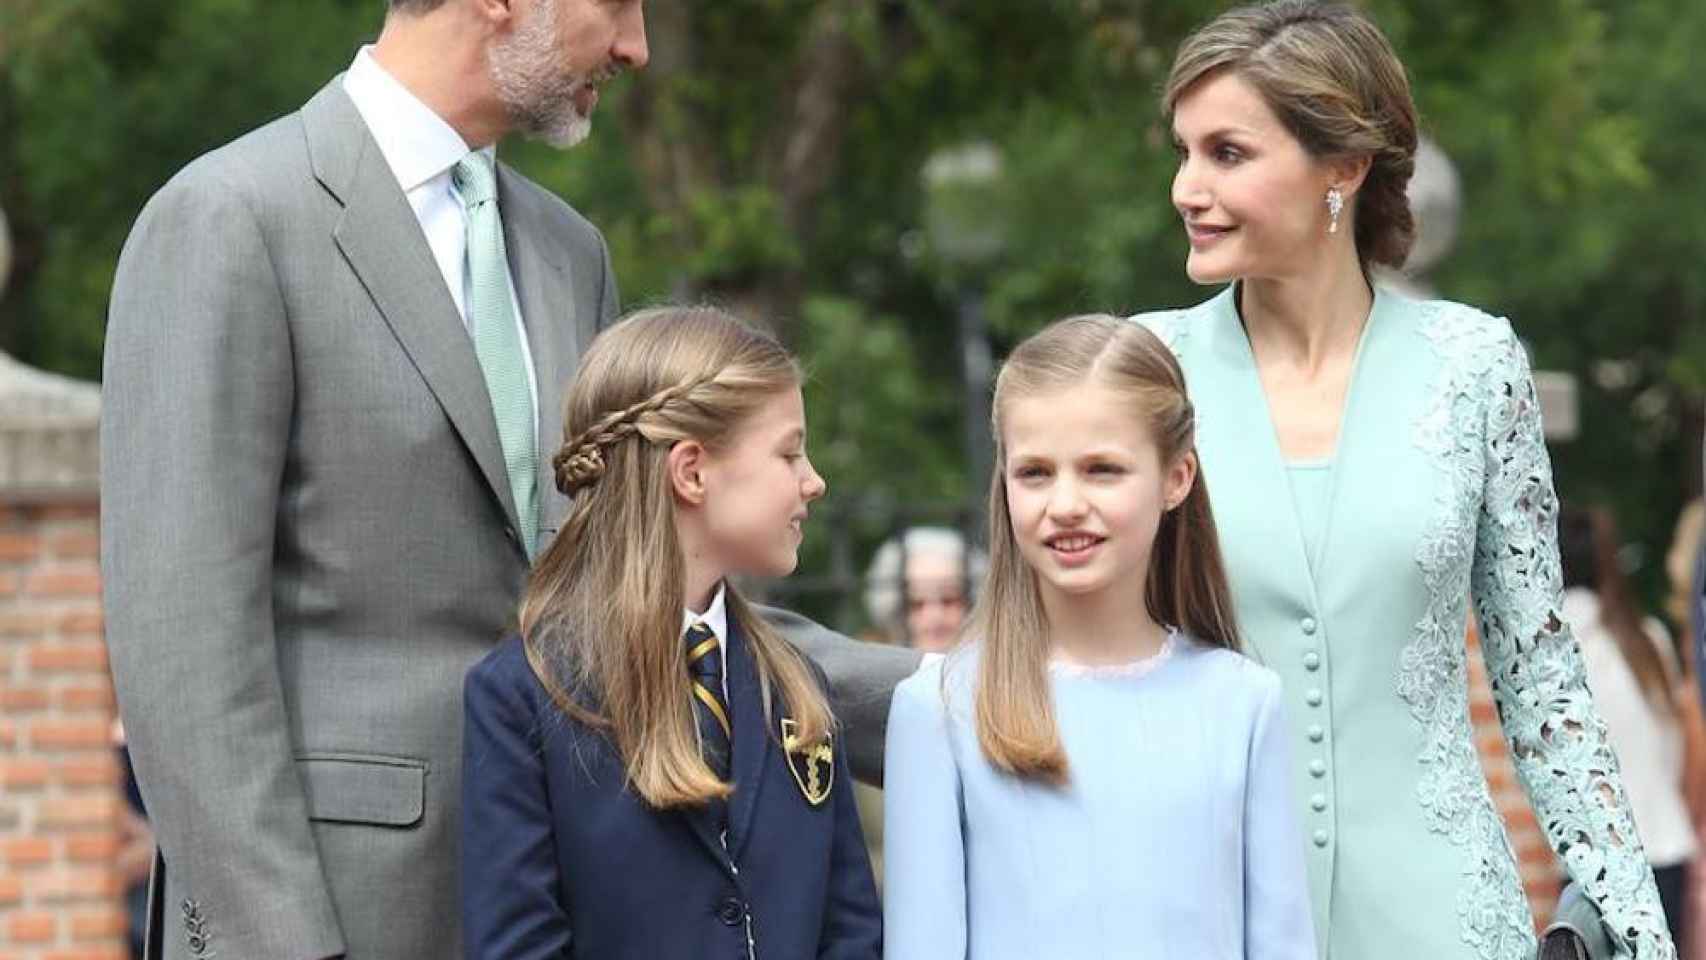 La infanta Sofía posa con su hermana y los reyes en su primera comunión